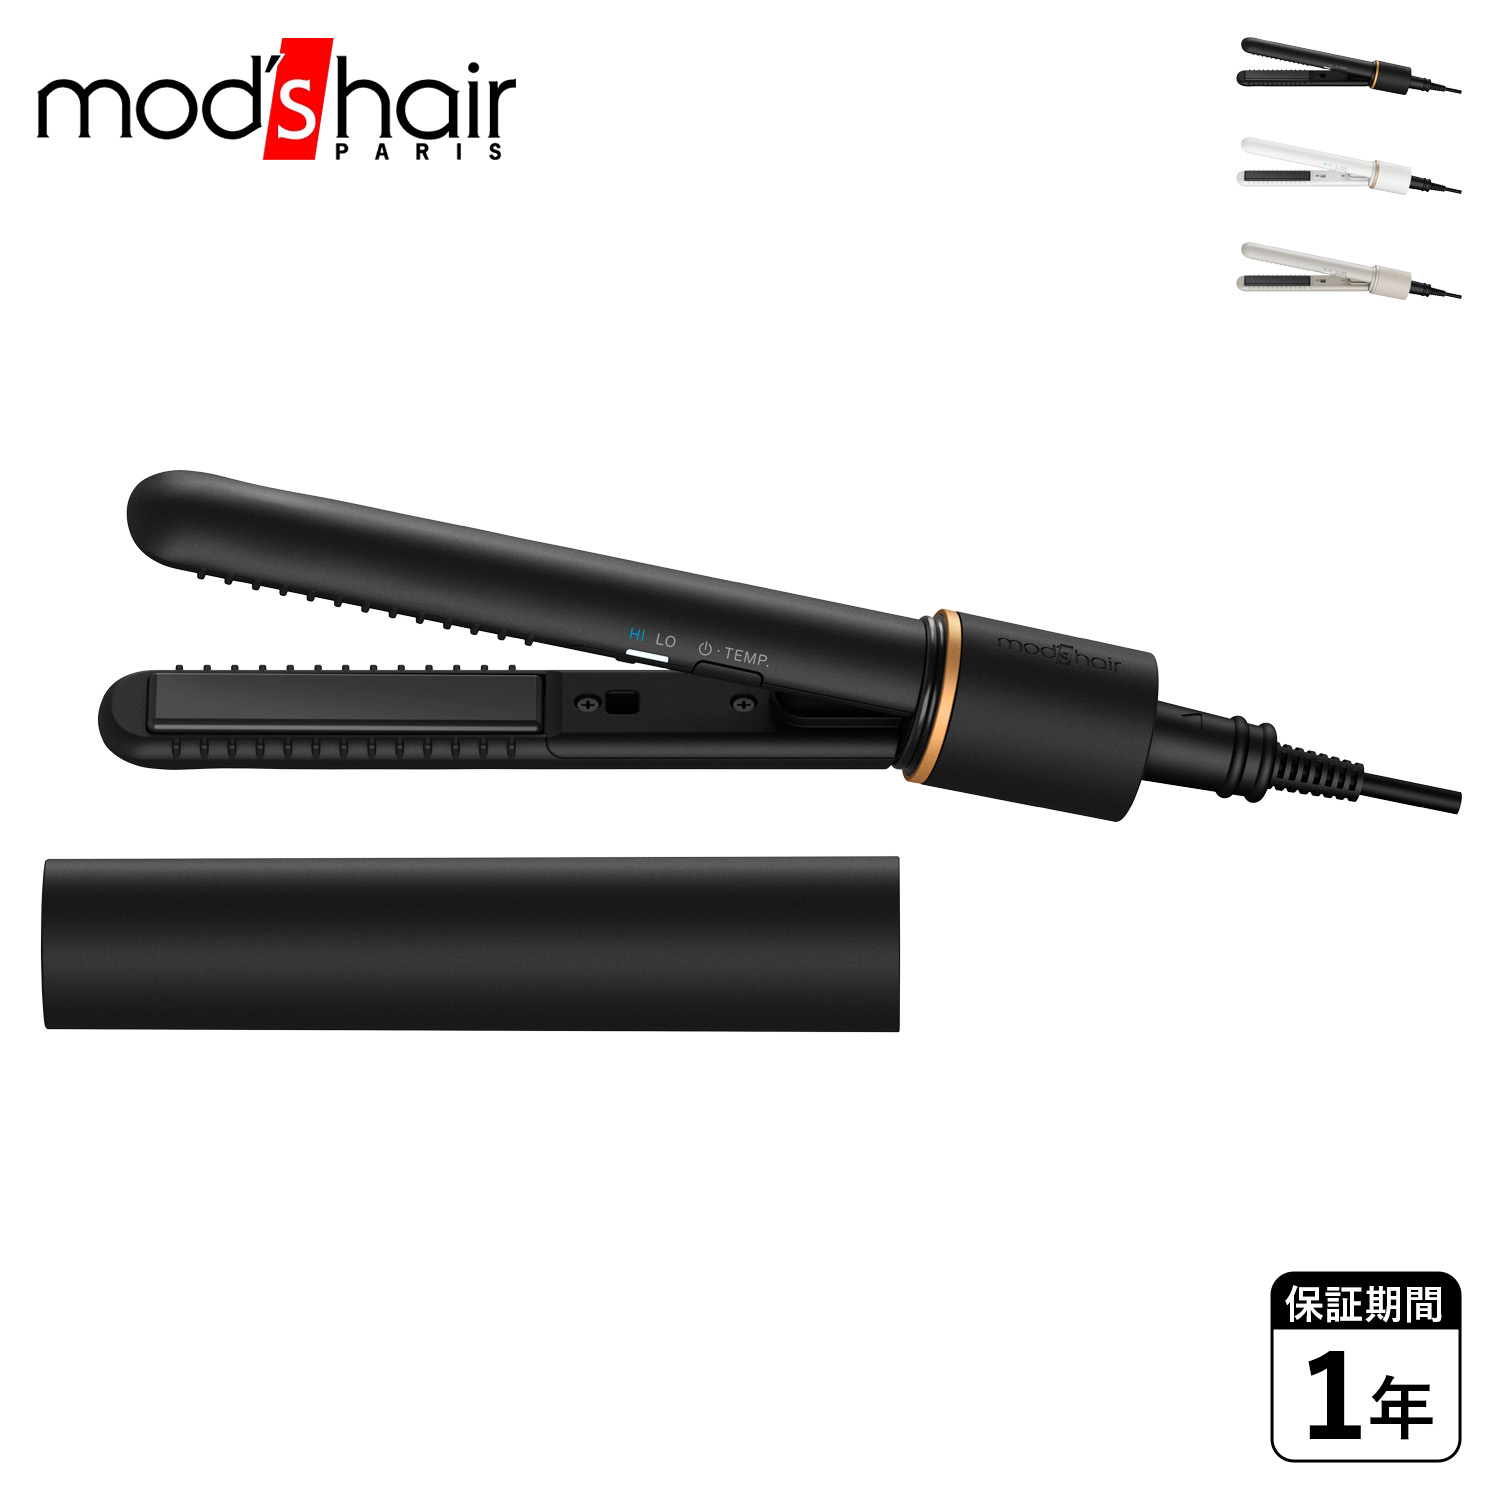 モッズヘア modshair ヘアアイロン ストレート コードレス USB充電式 ミニ MOBILE HAIR IRON ブラック ホワイト グレー 黒 白 MHS-1342 母の日